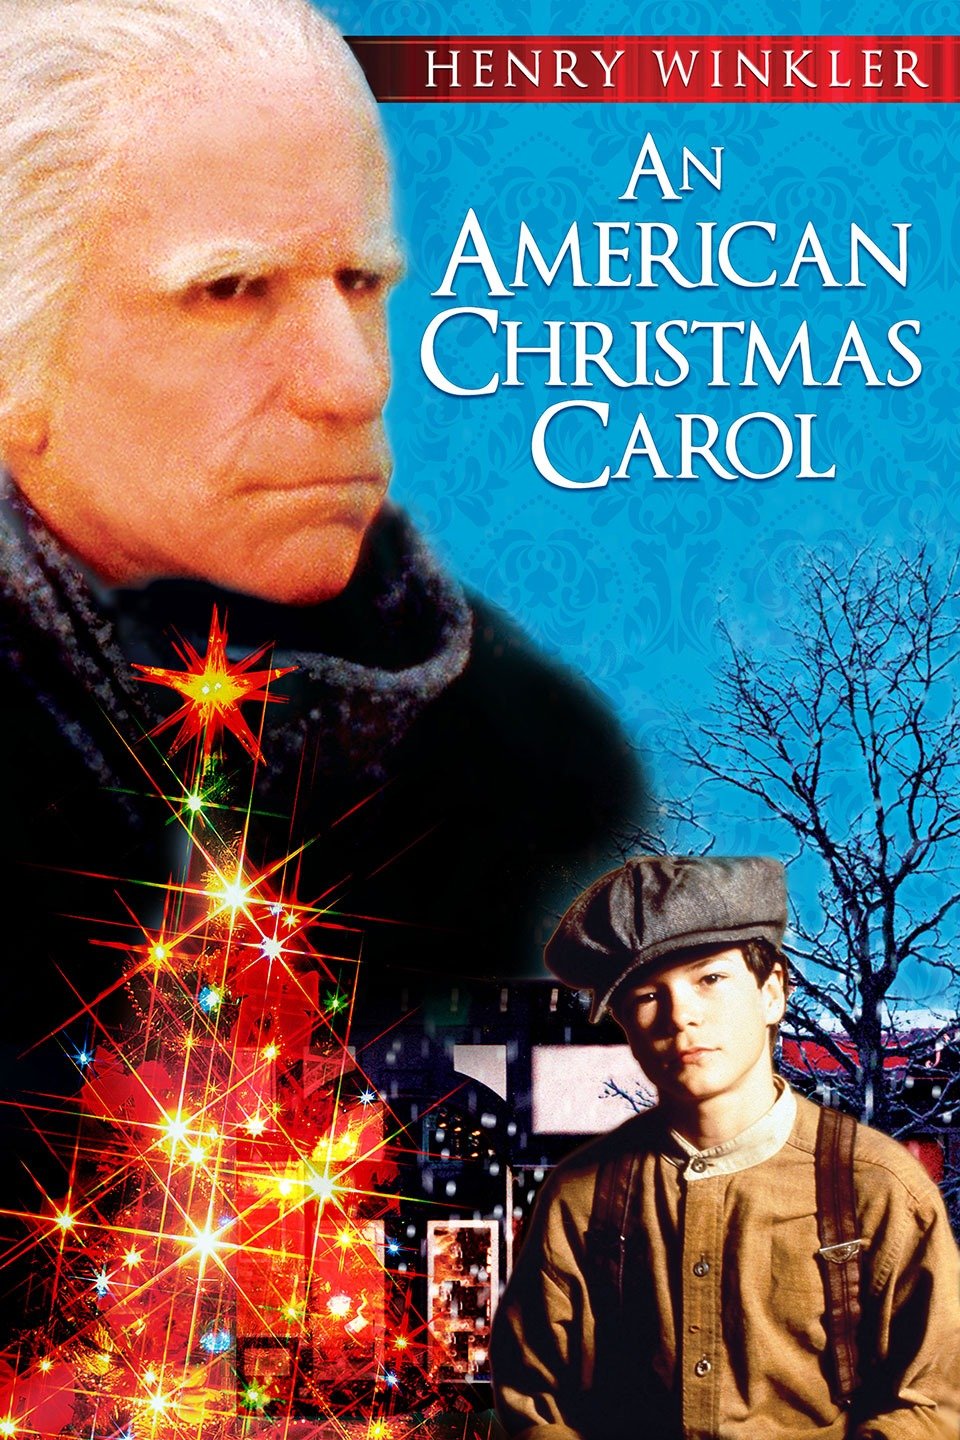 An American Christmas Carol (1979) starring Henry Winkler on DVD on DVD